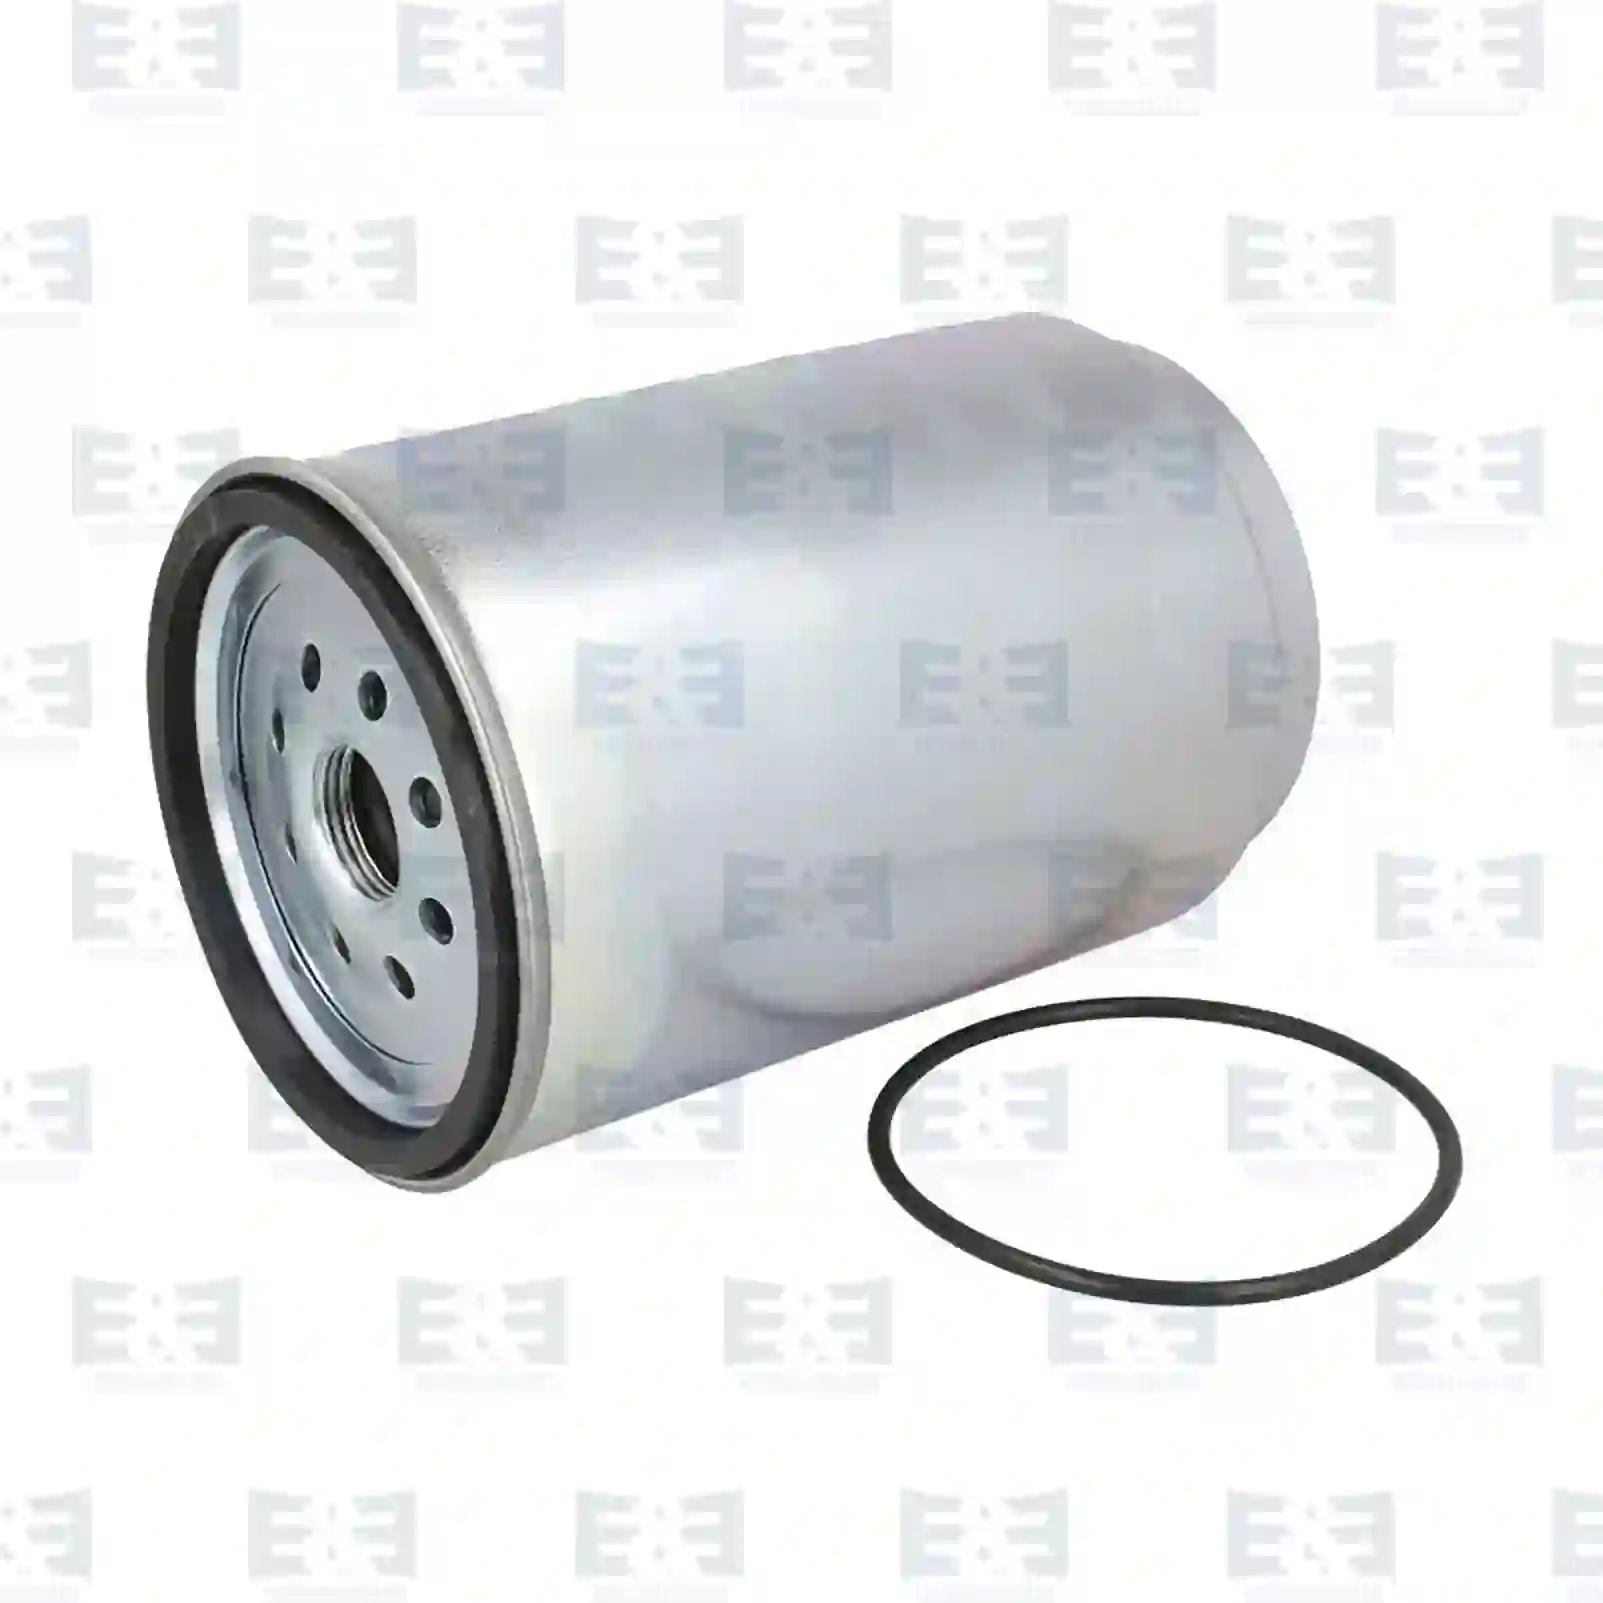  Fuel filter, water separator || E&E Truck Spare Parts | Truck Spare Parts, Auotomotive Spare Parts